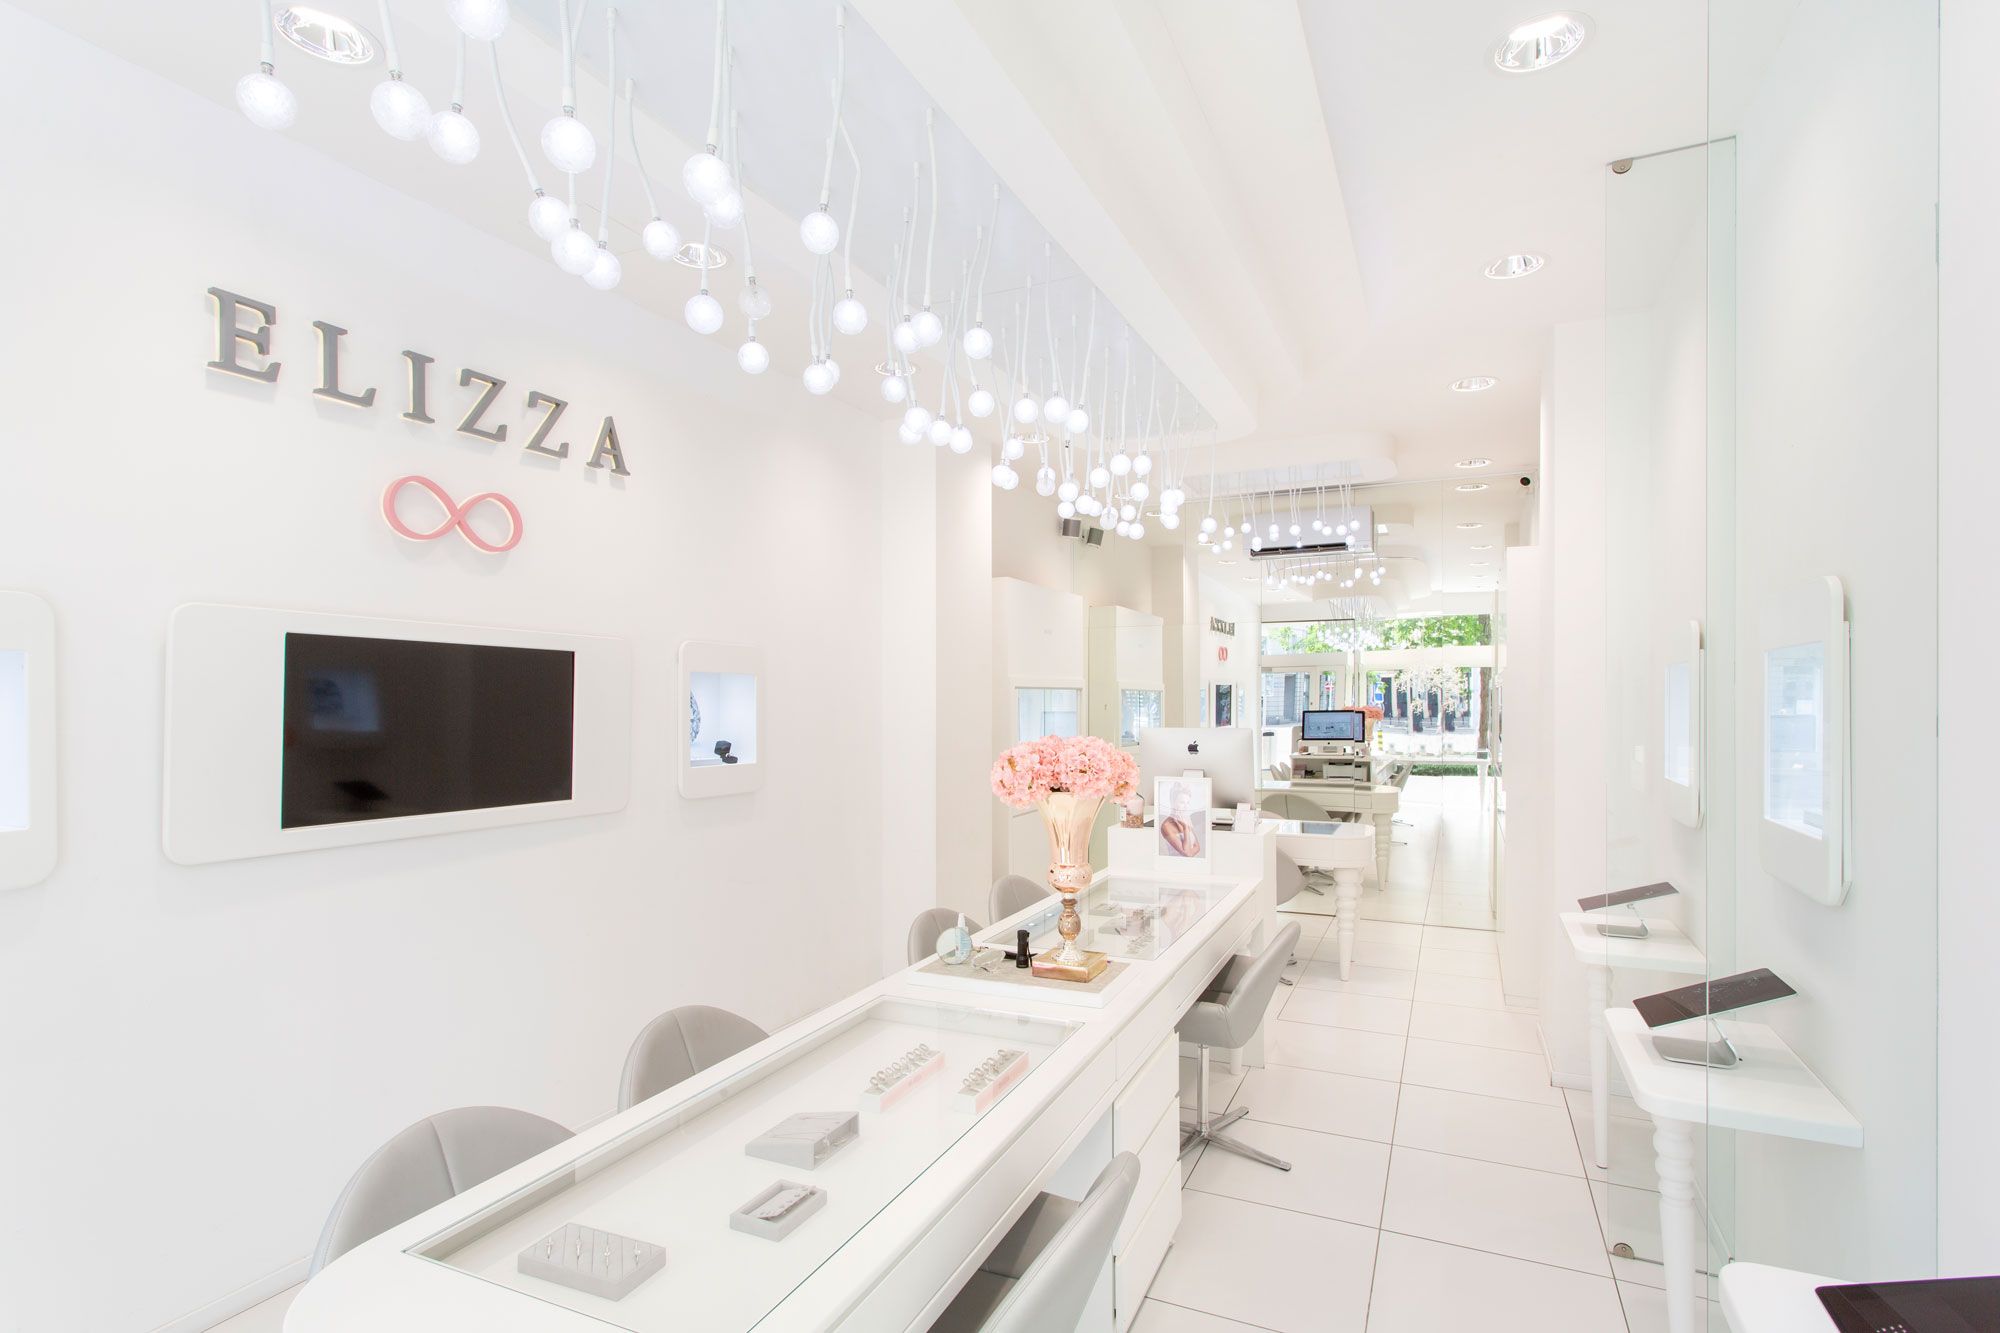 elizza_store_at_lowenstrasse_43_zurich_switzerland_interior_view